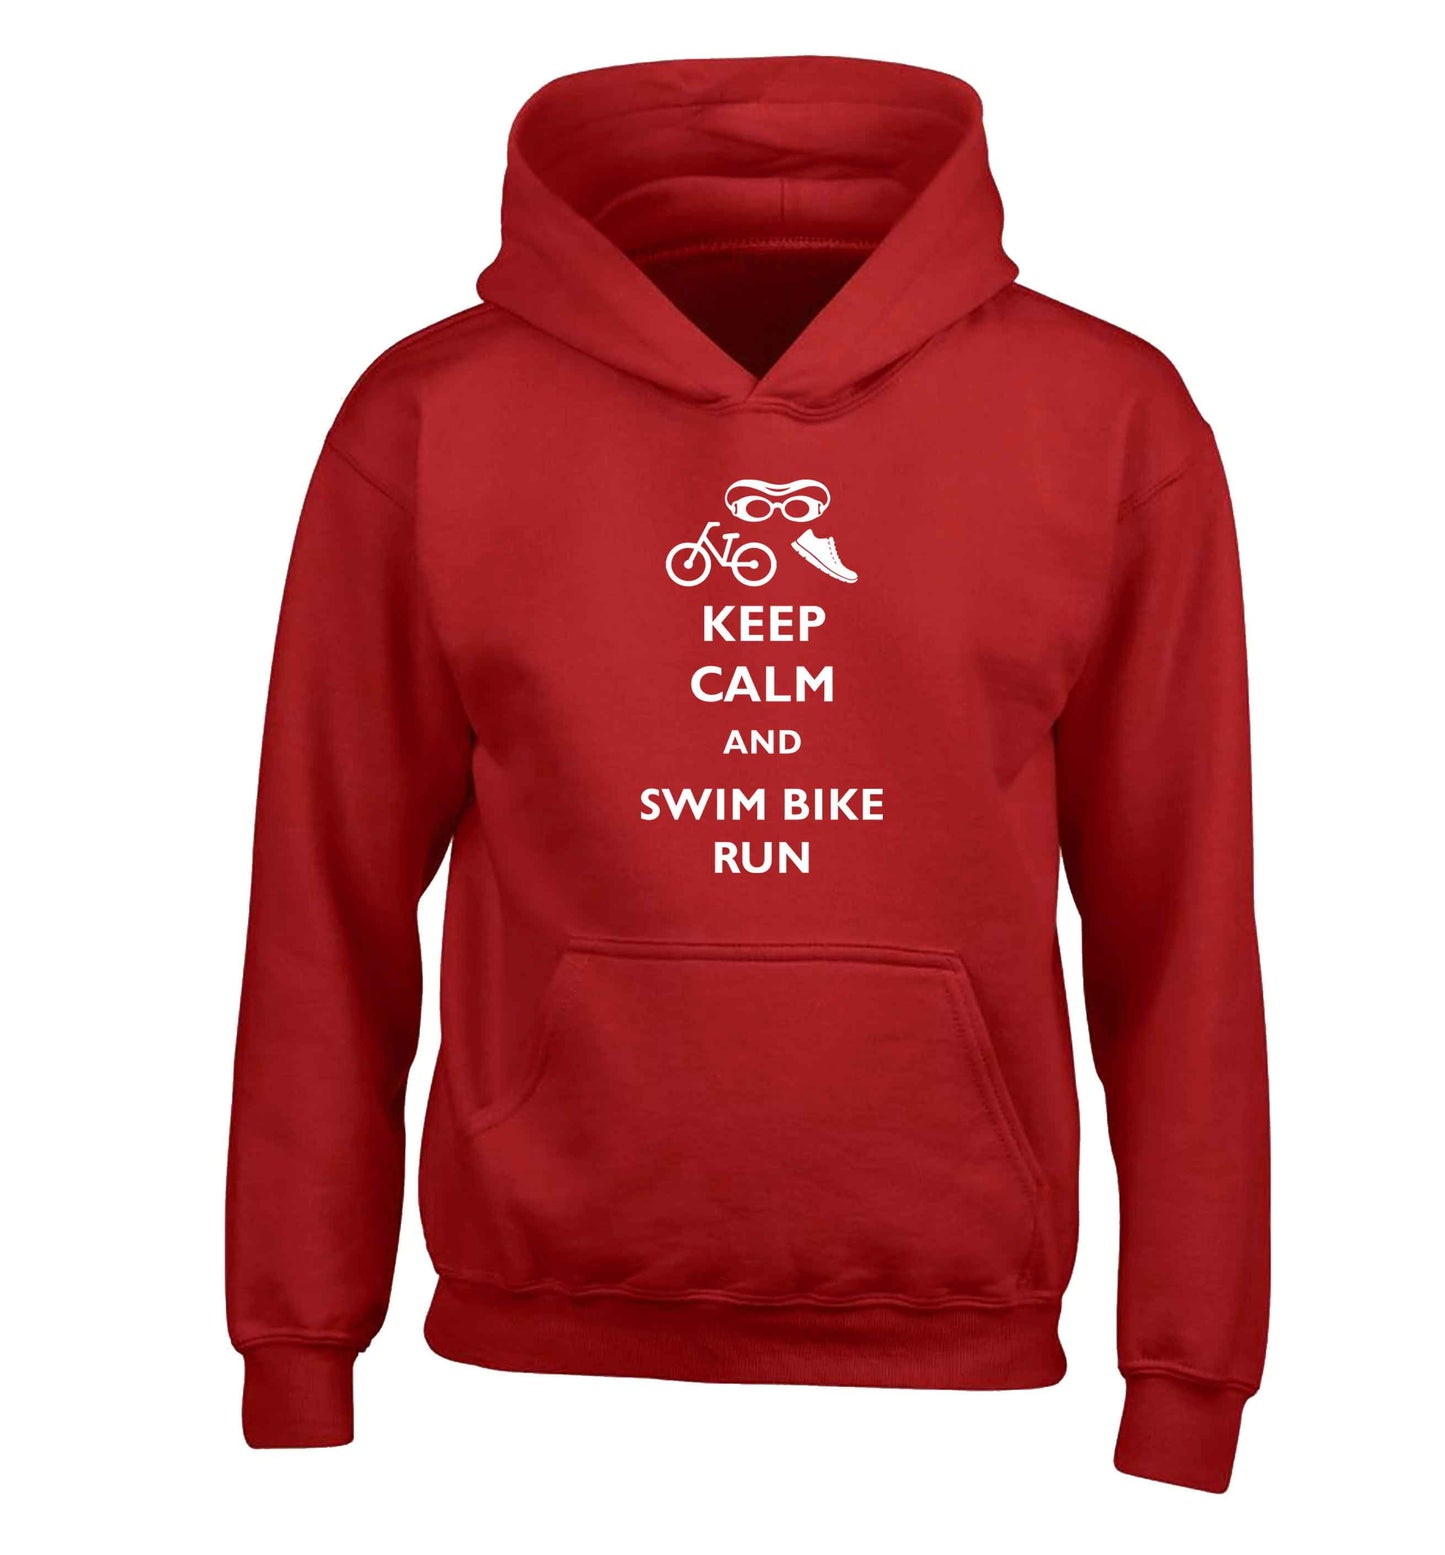 Keep calm and swim bike run children's red hoodie 12-13 Years